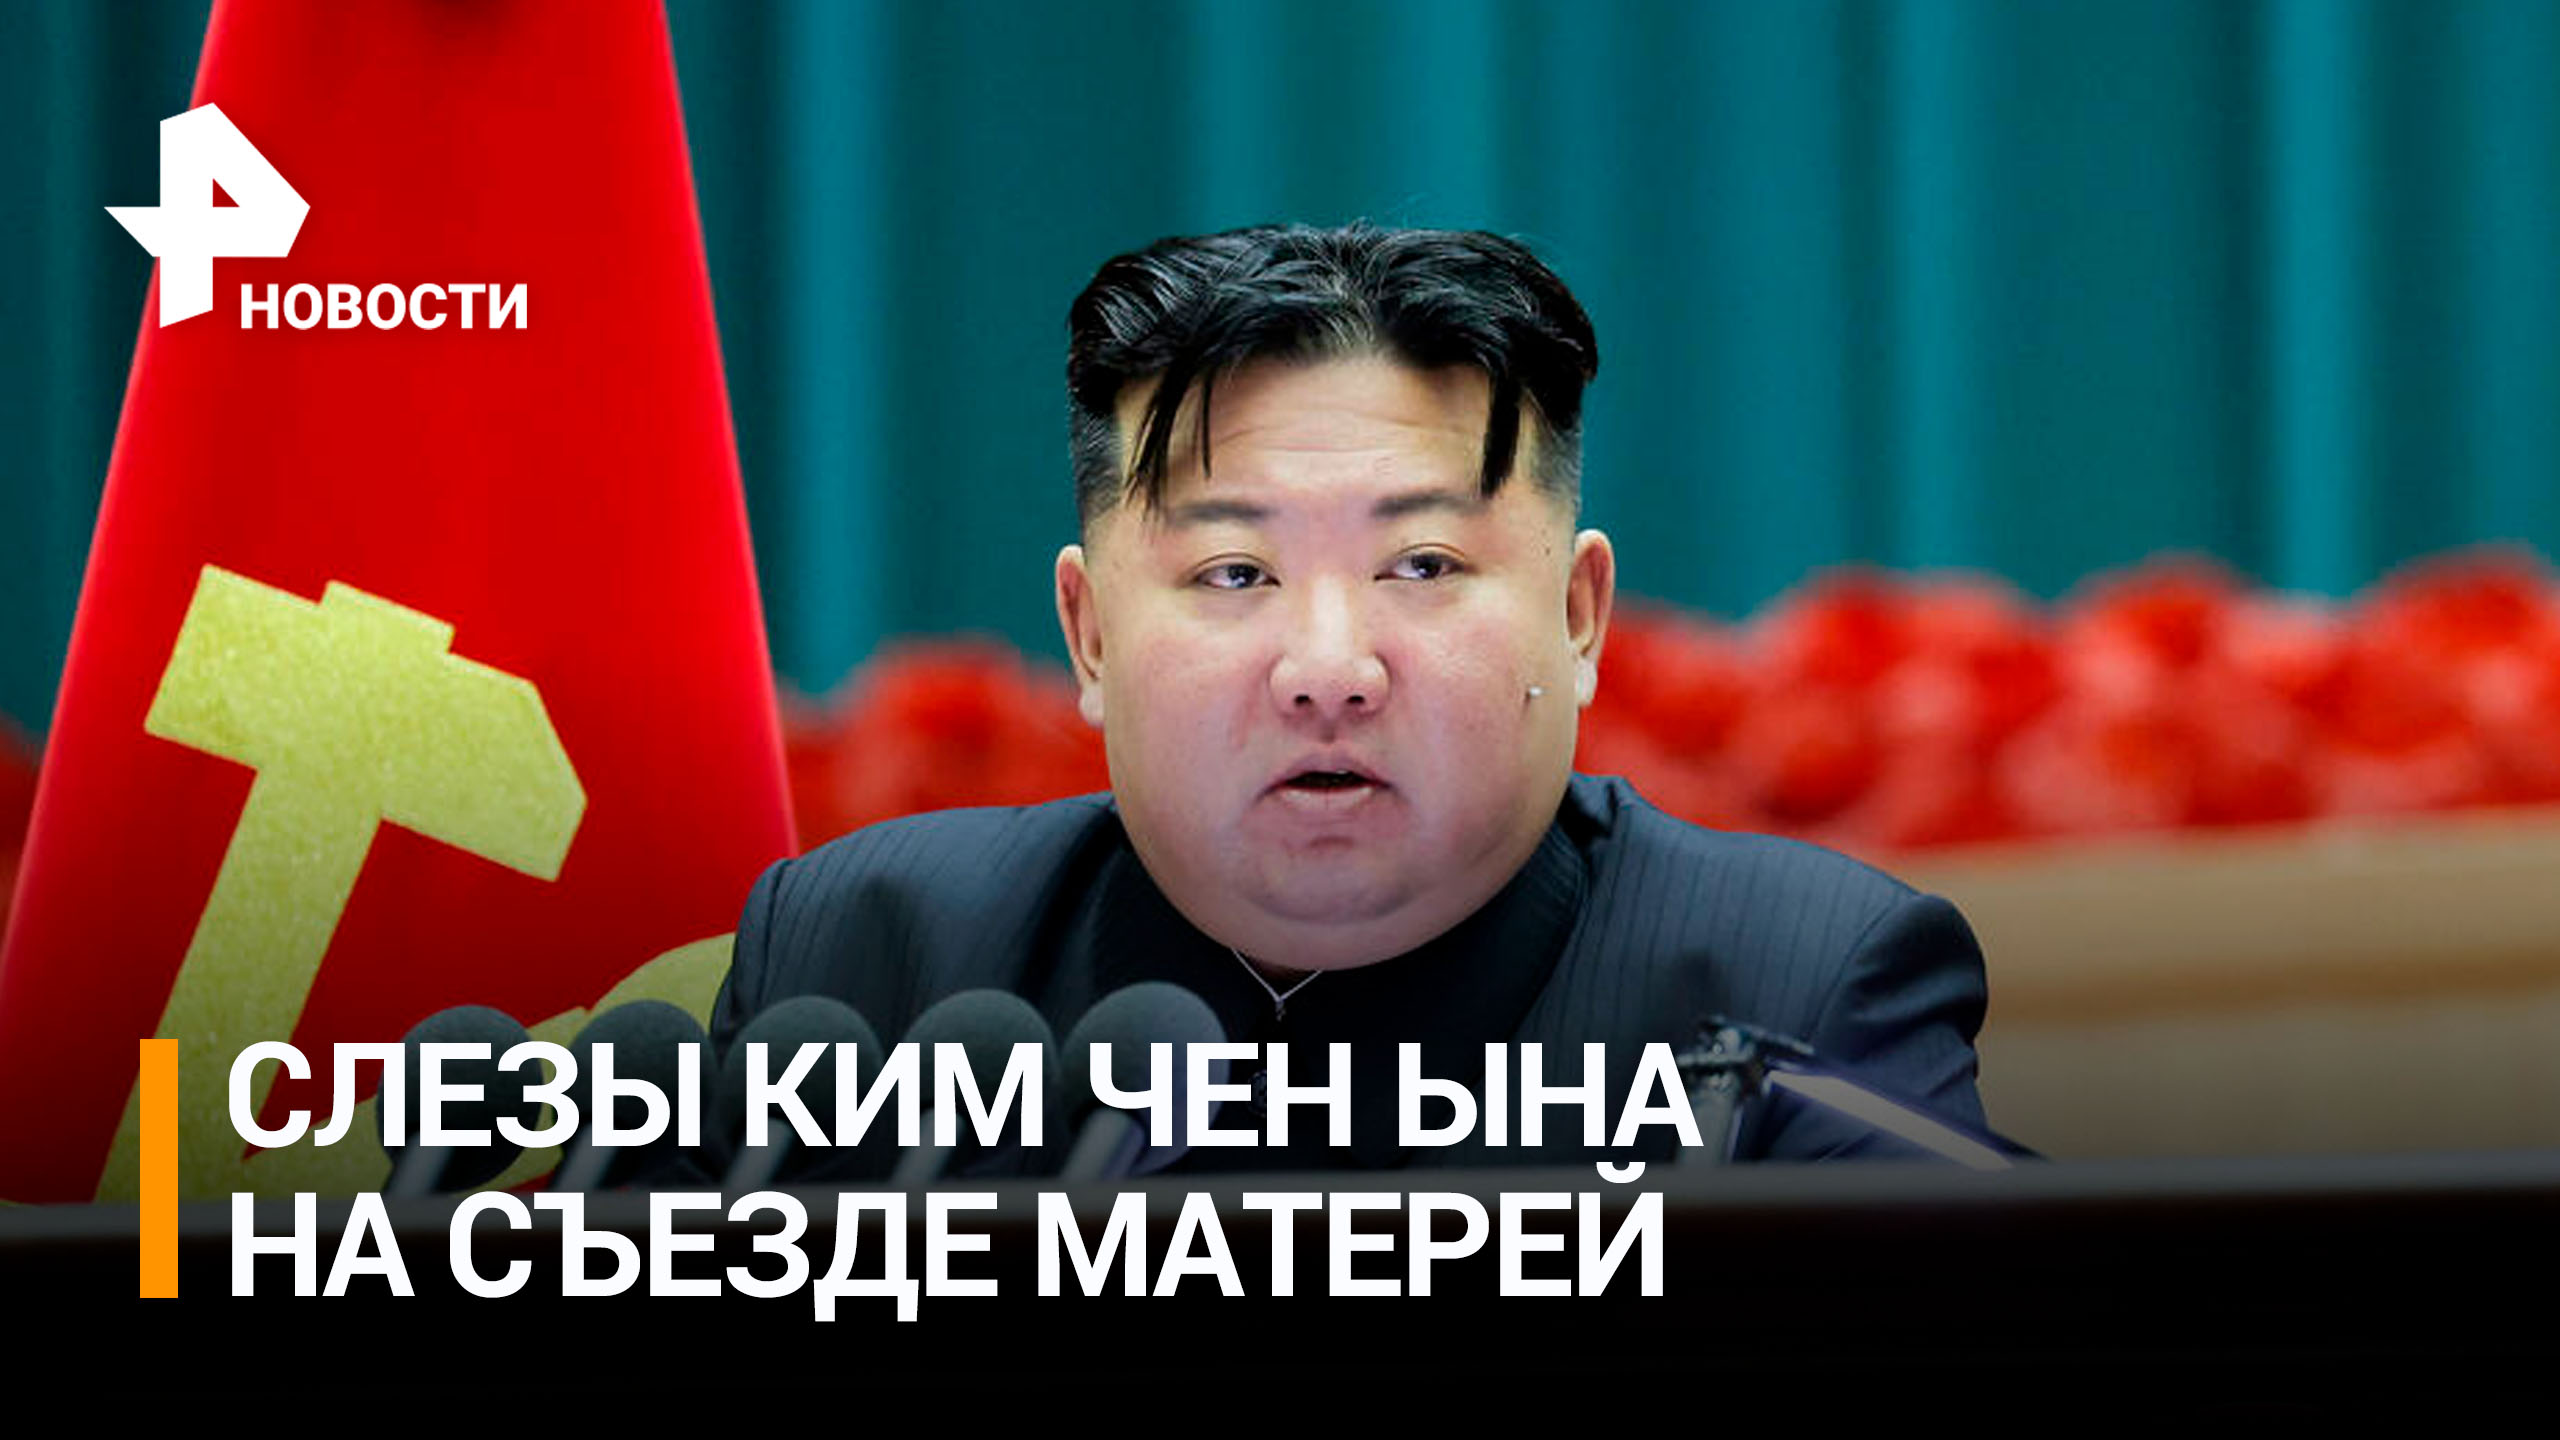 Ким Чен Ын расплакался во время доклада о рождаемости на съезде матерей / РЕН Новости